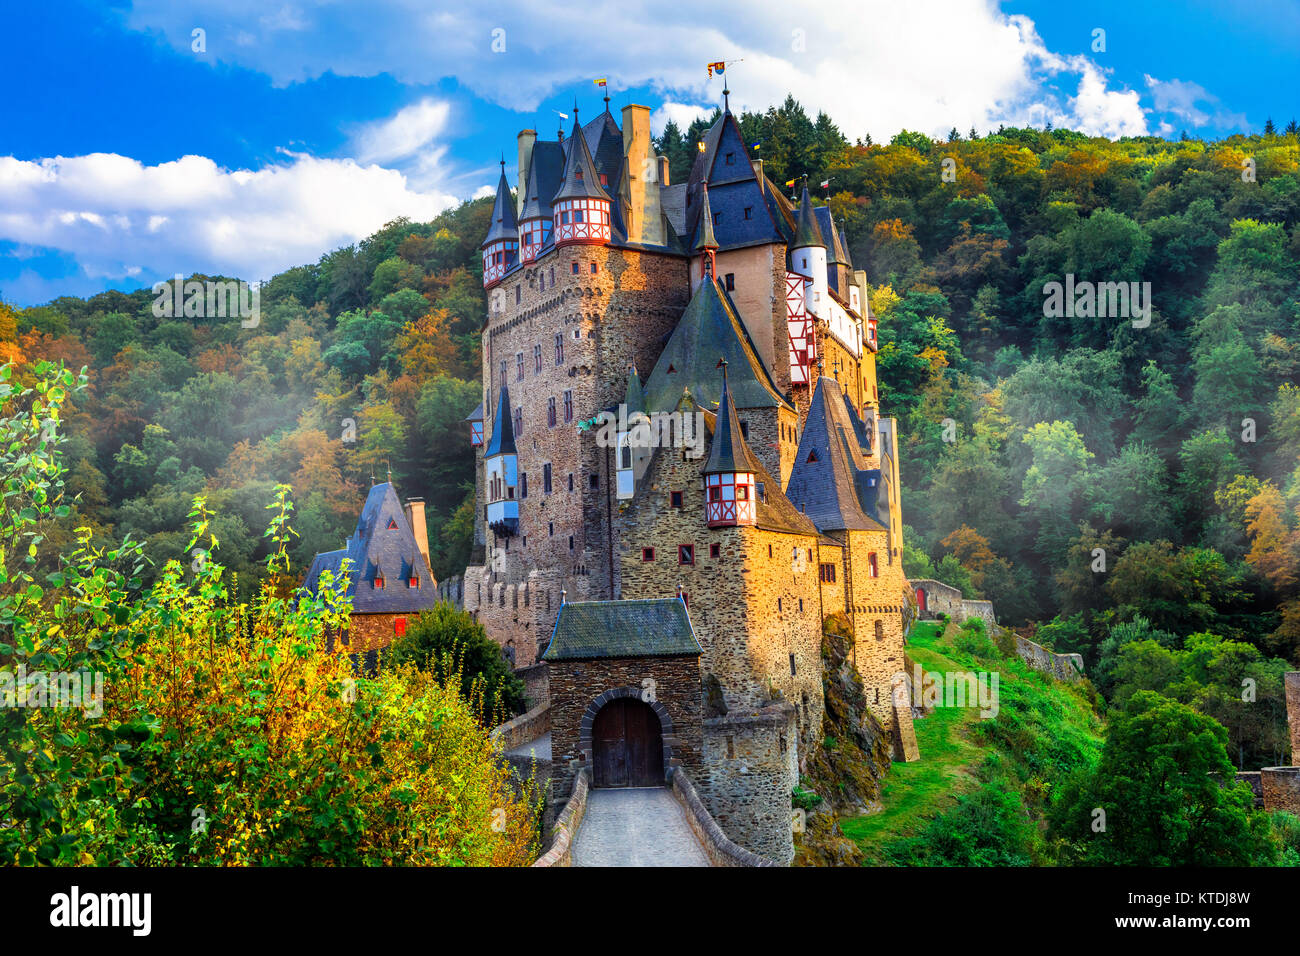 Schöne Burg Eltz, große mittelalterliche Burg im Wald, Deutschland. Stockfoto